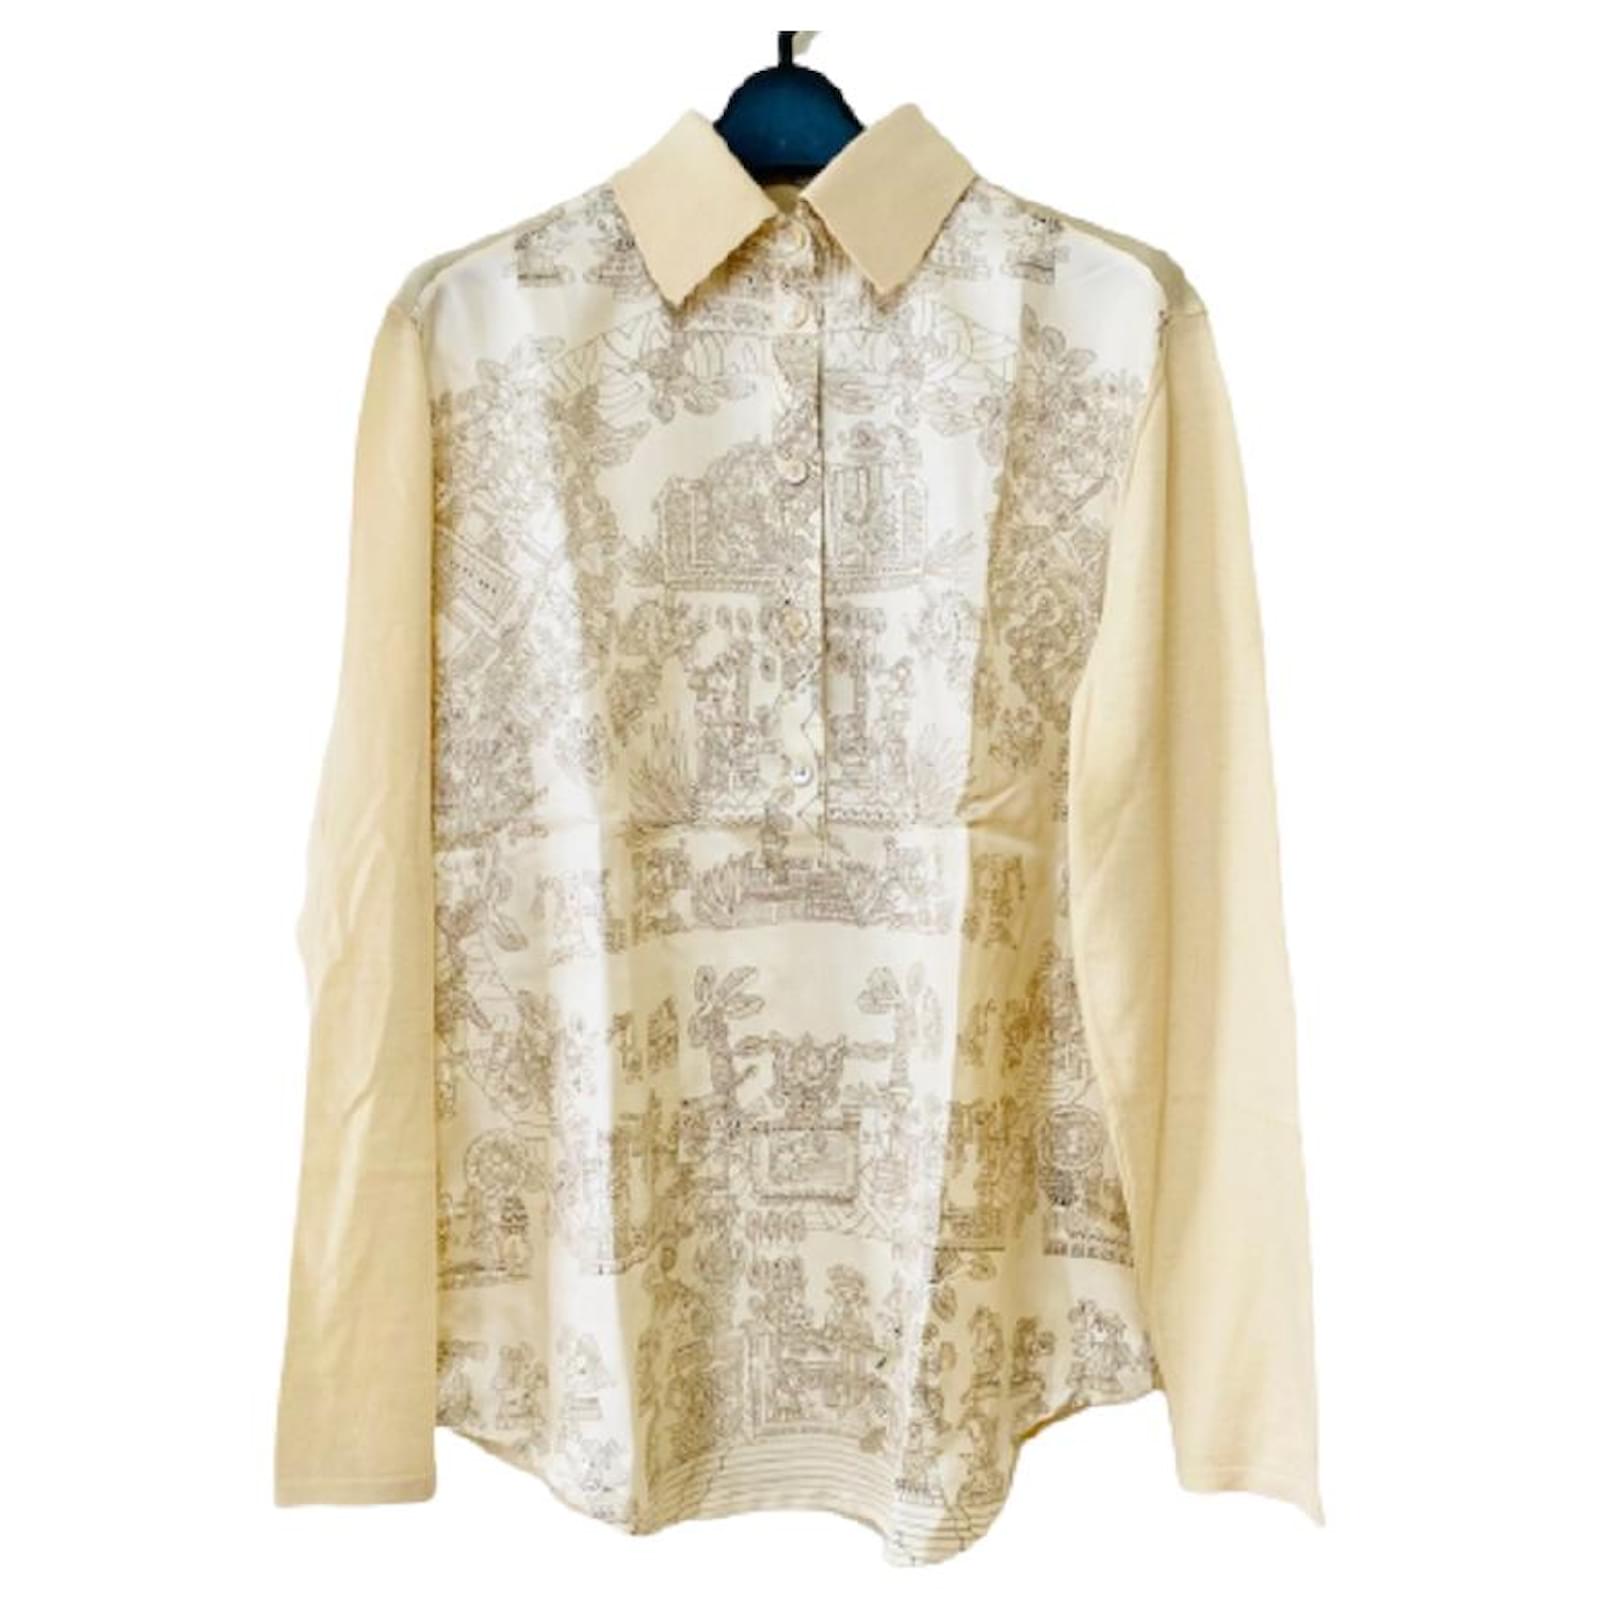 6912円 【94%OFF!】 vintage hermes polo shirts